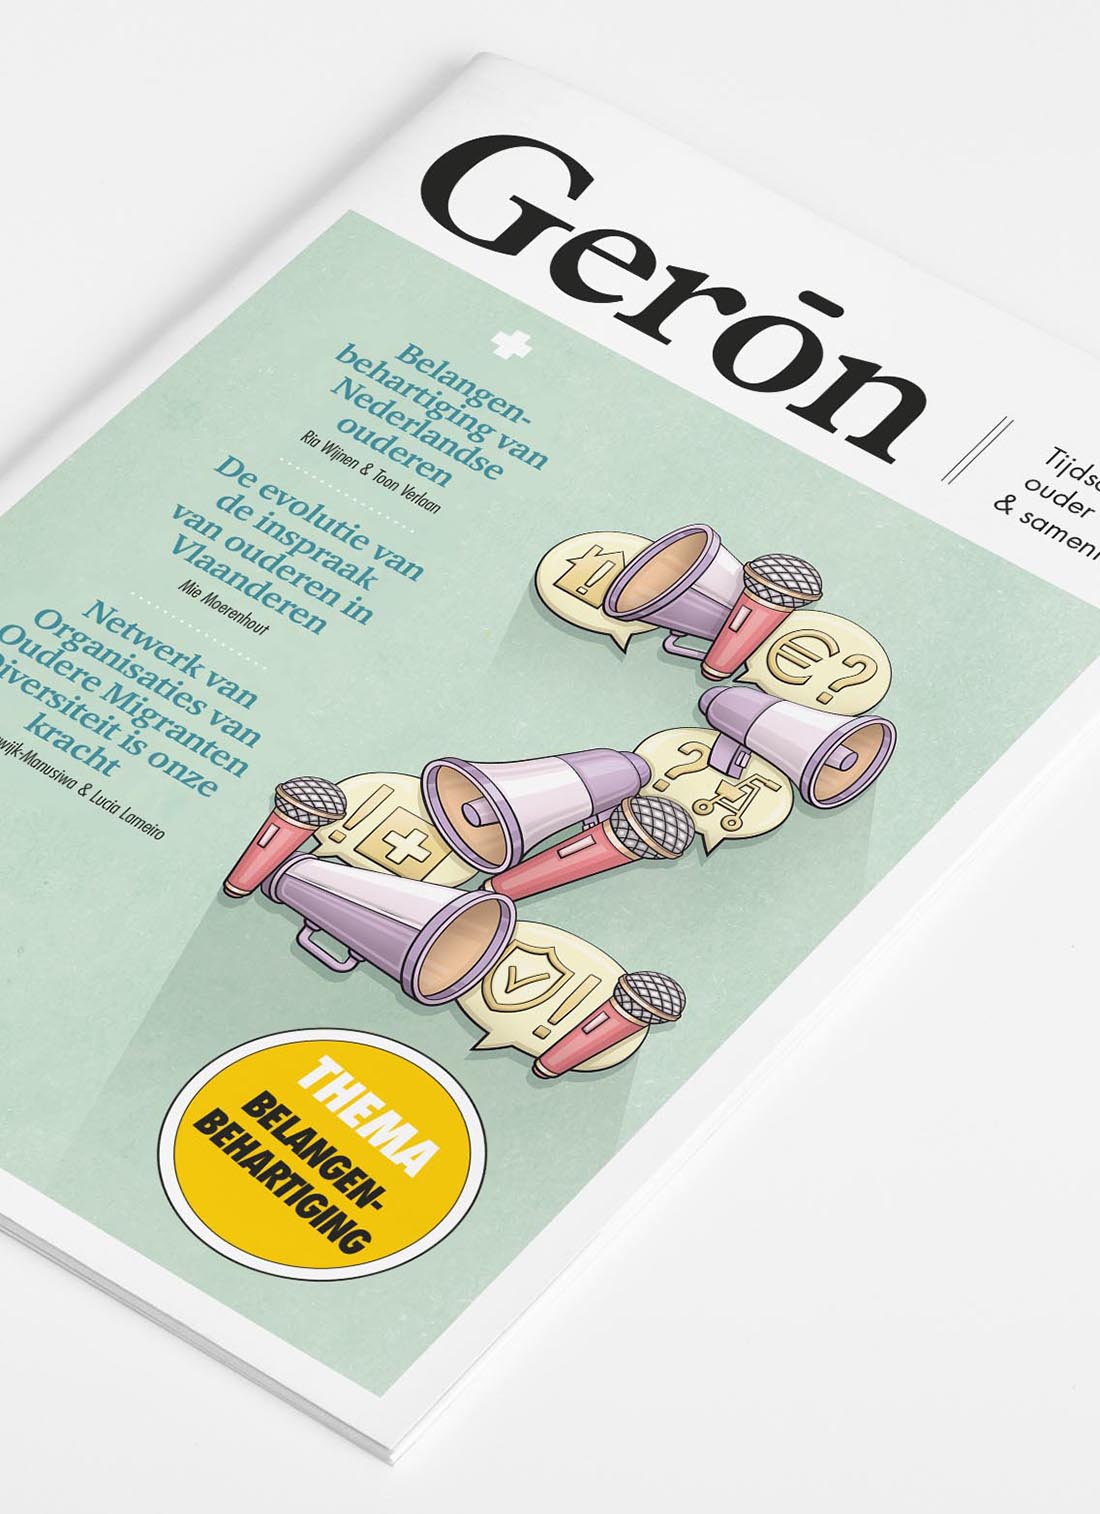 Geron 2 cover illustratie